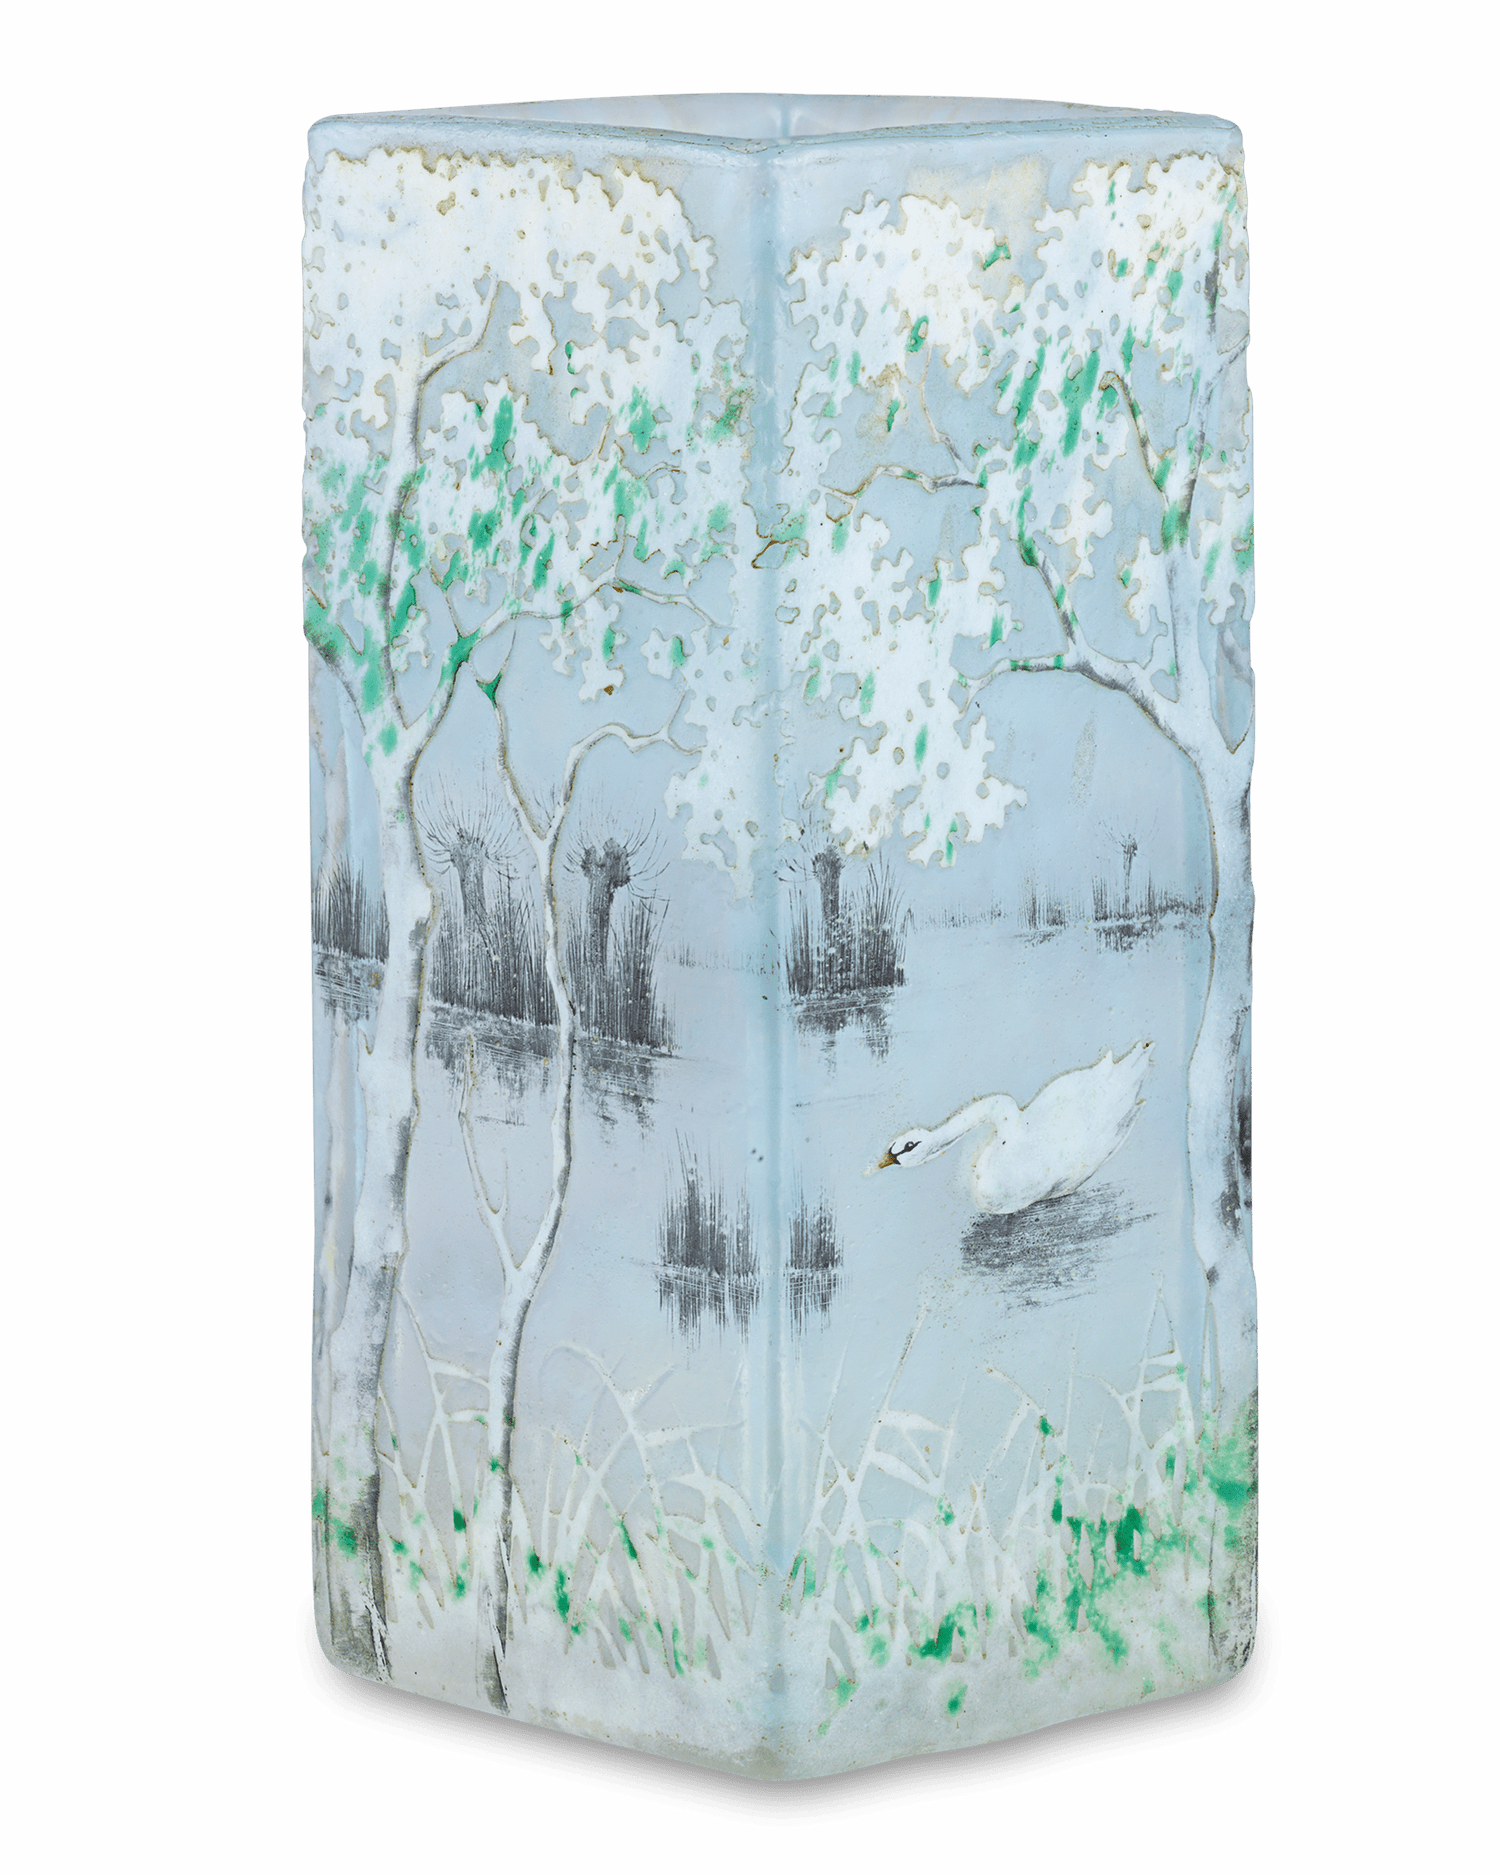 Swan Glass Vase by Daum Nancy